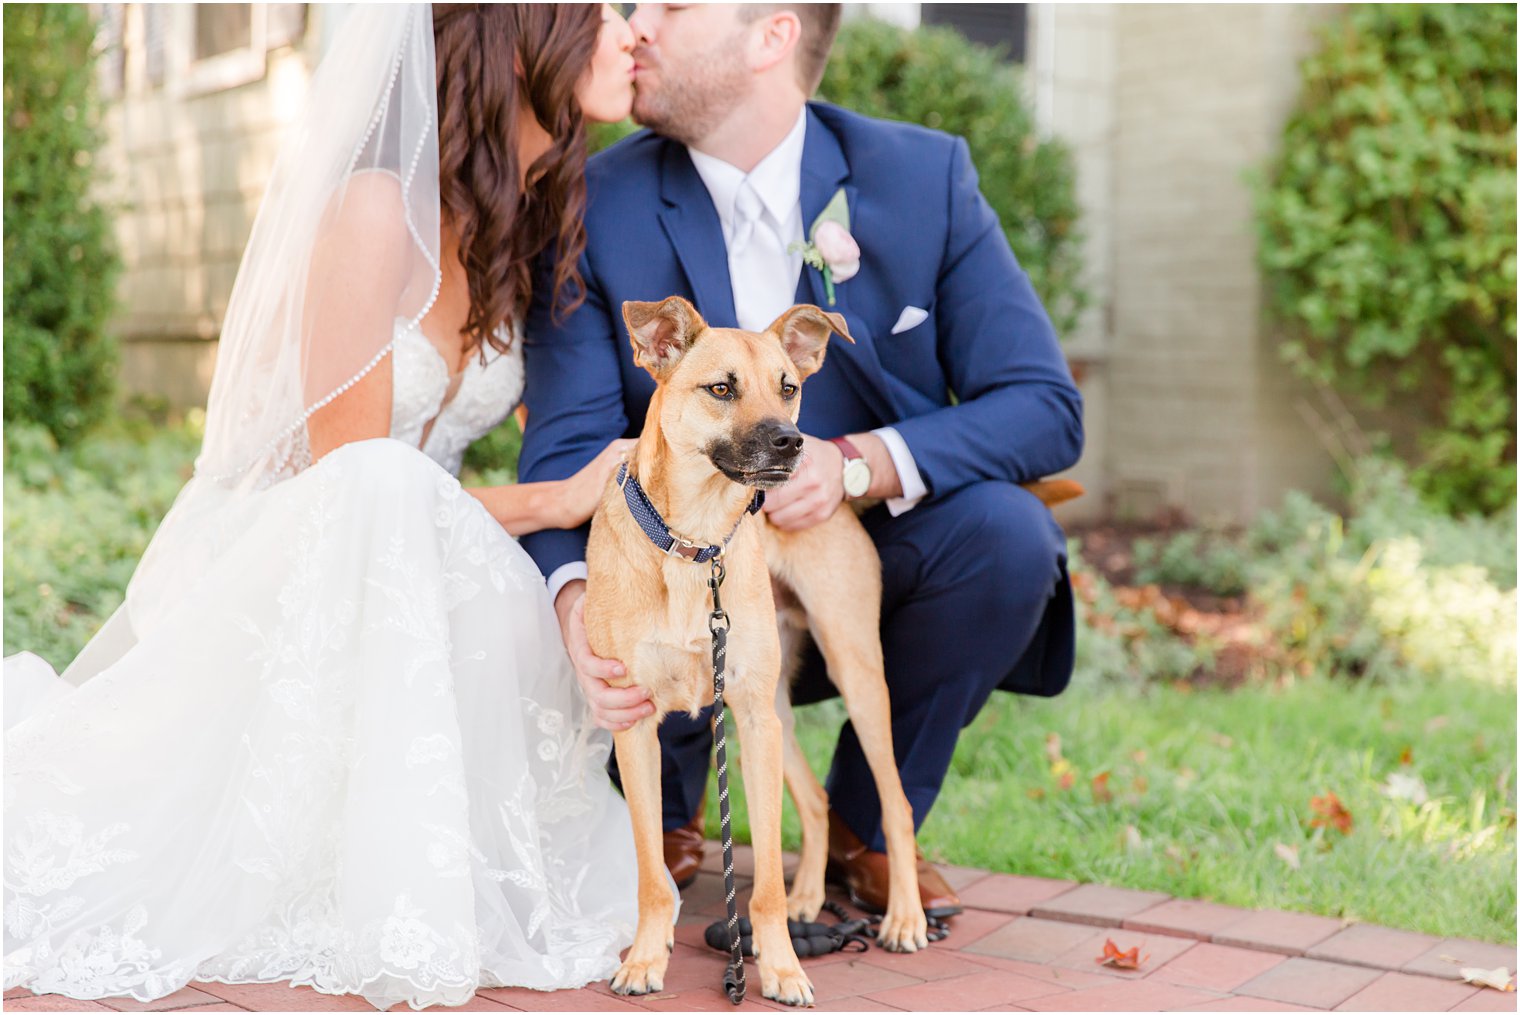 newlyweds kiss while holding dog on wedding day